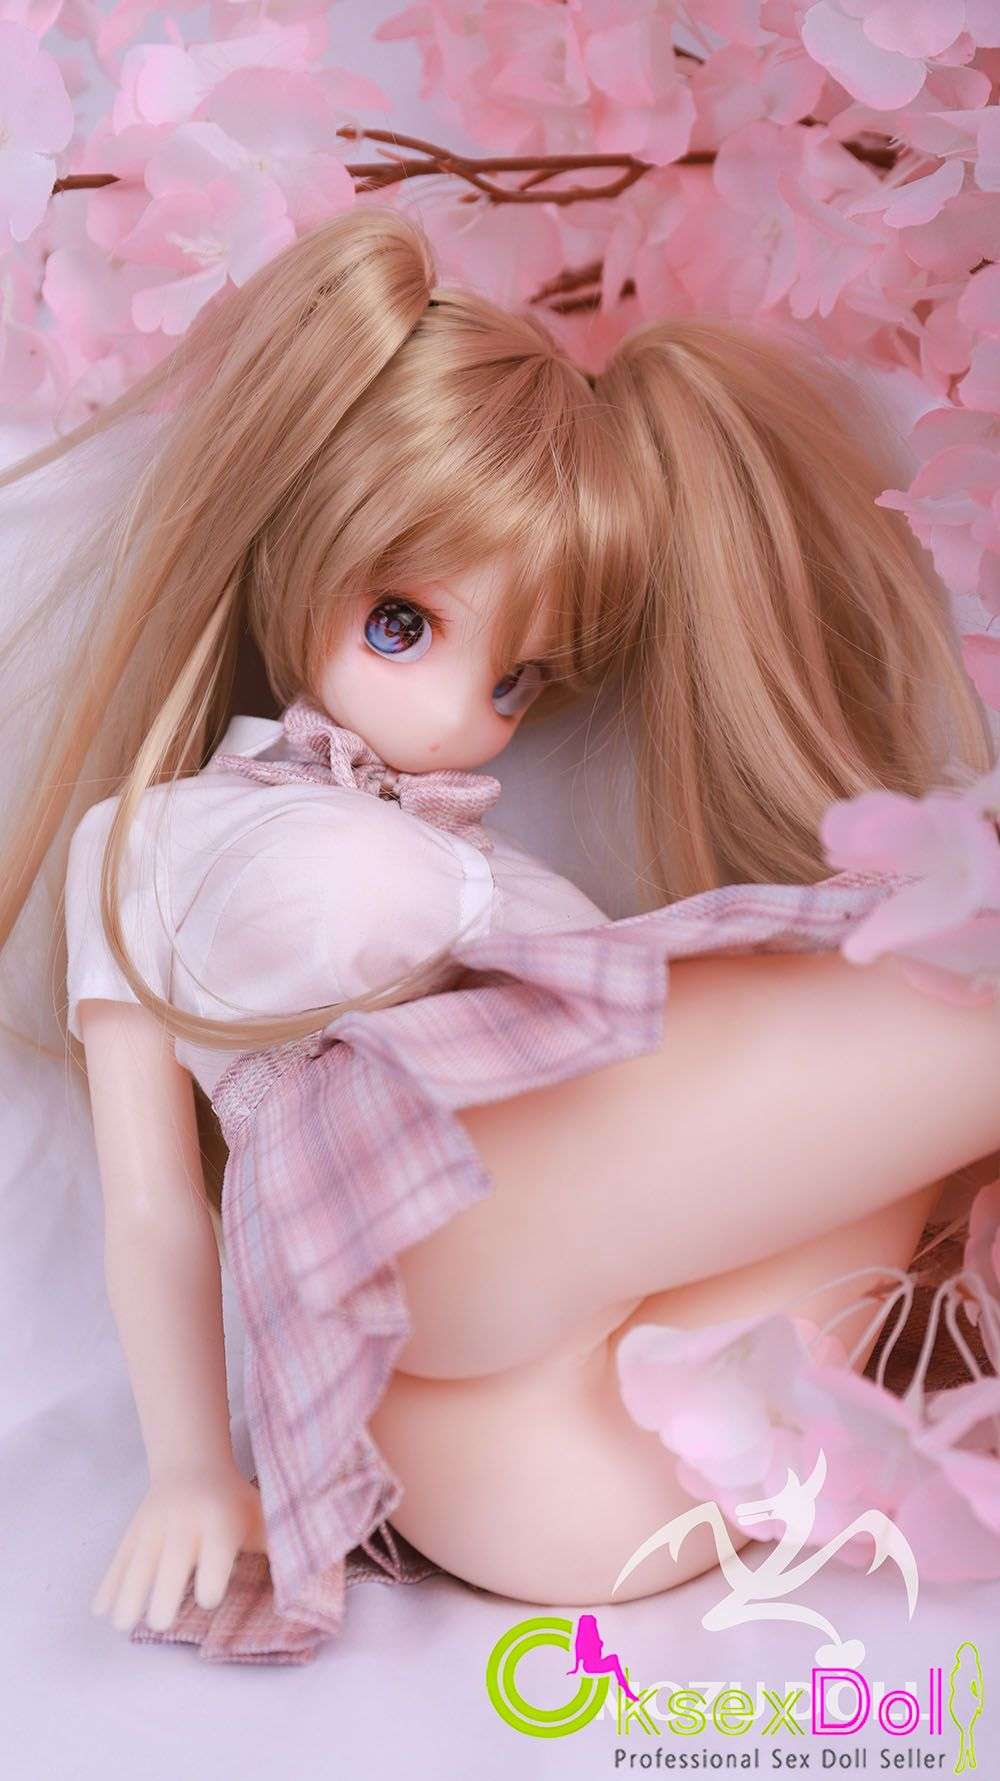 Anime Silicone Sex Doll Photos